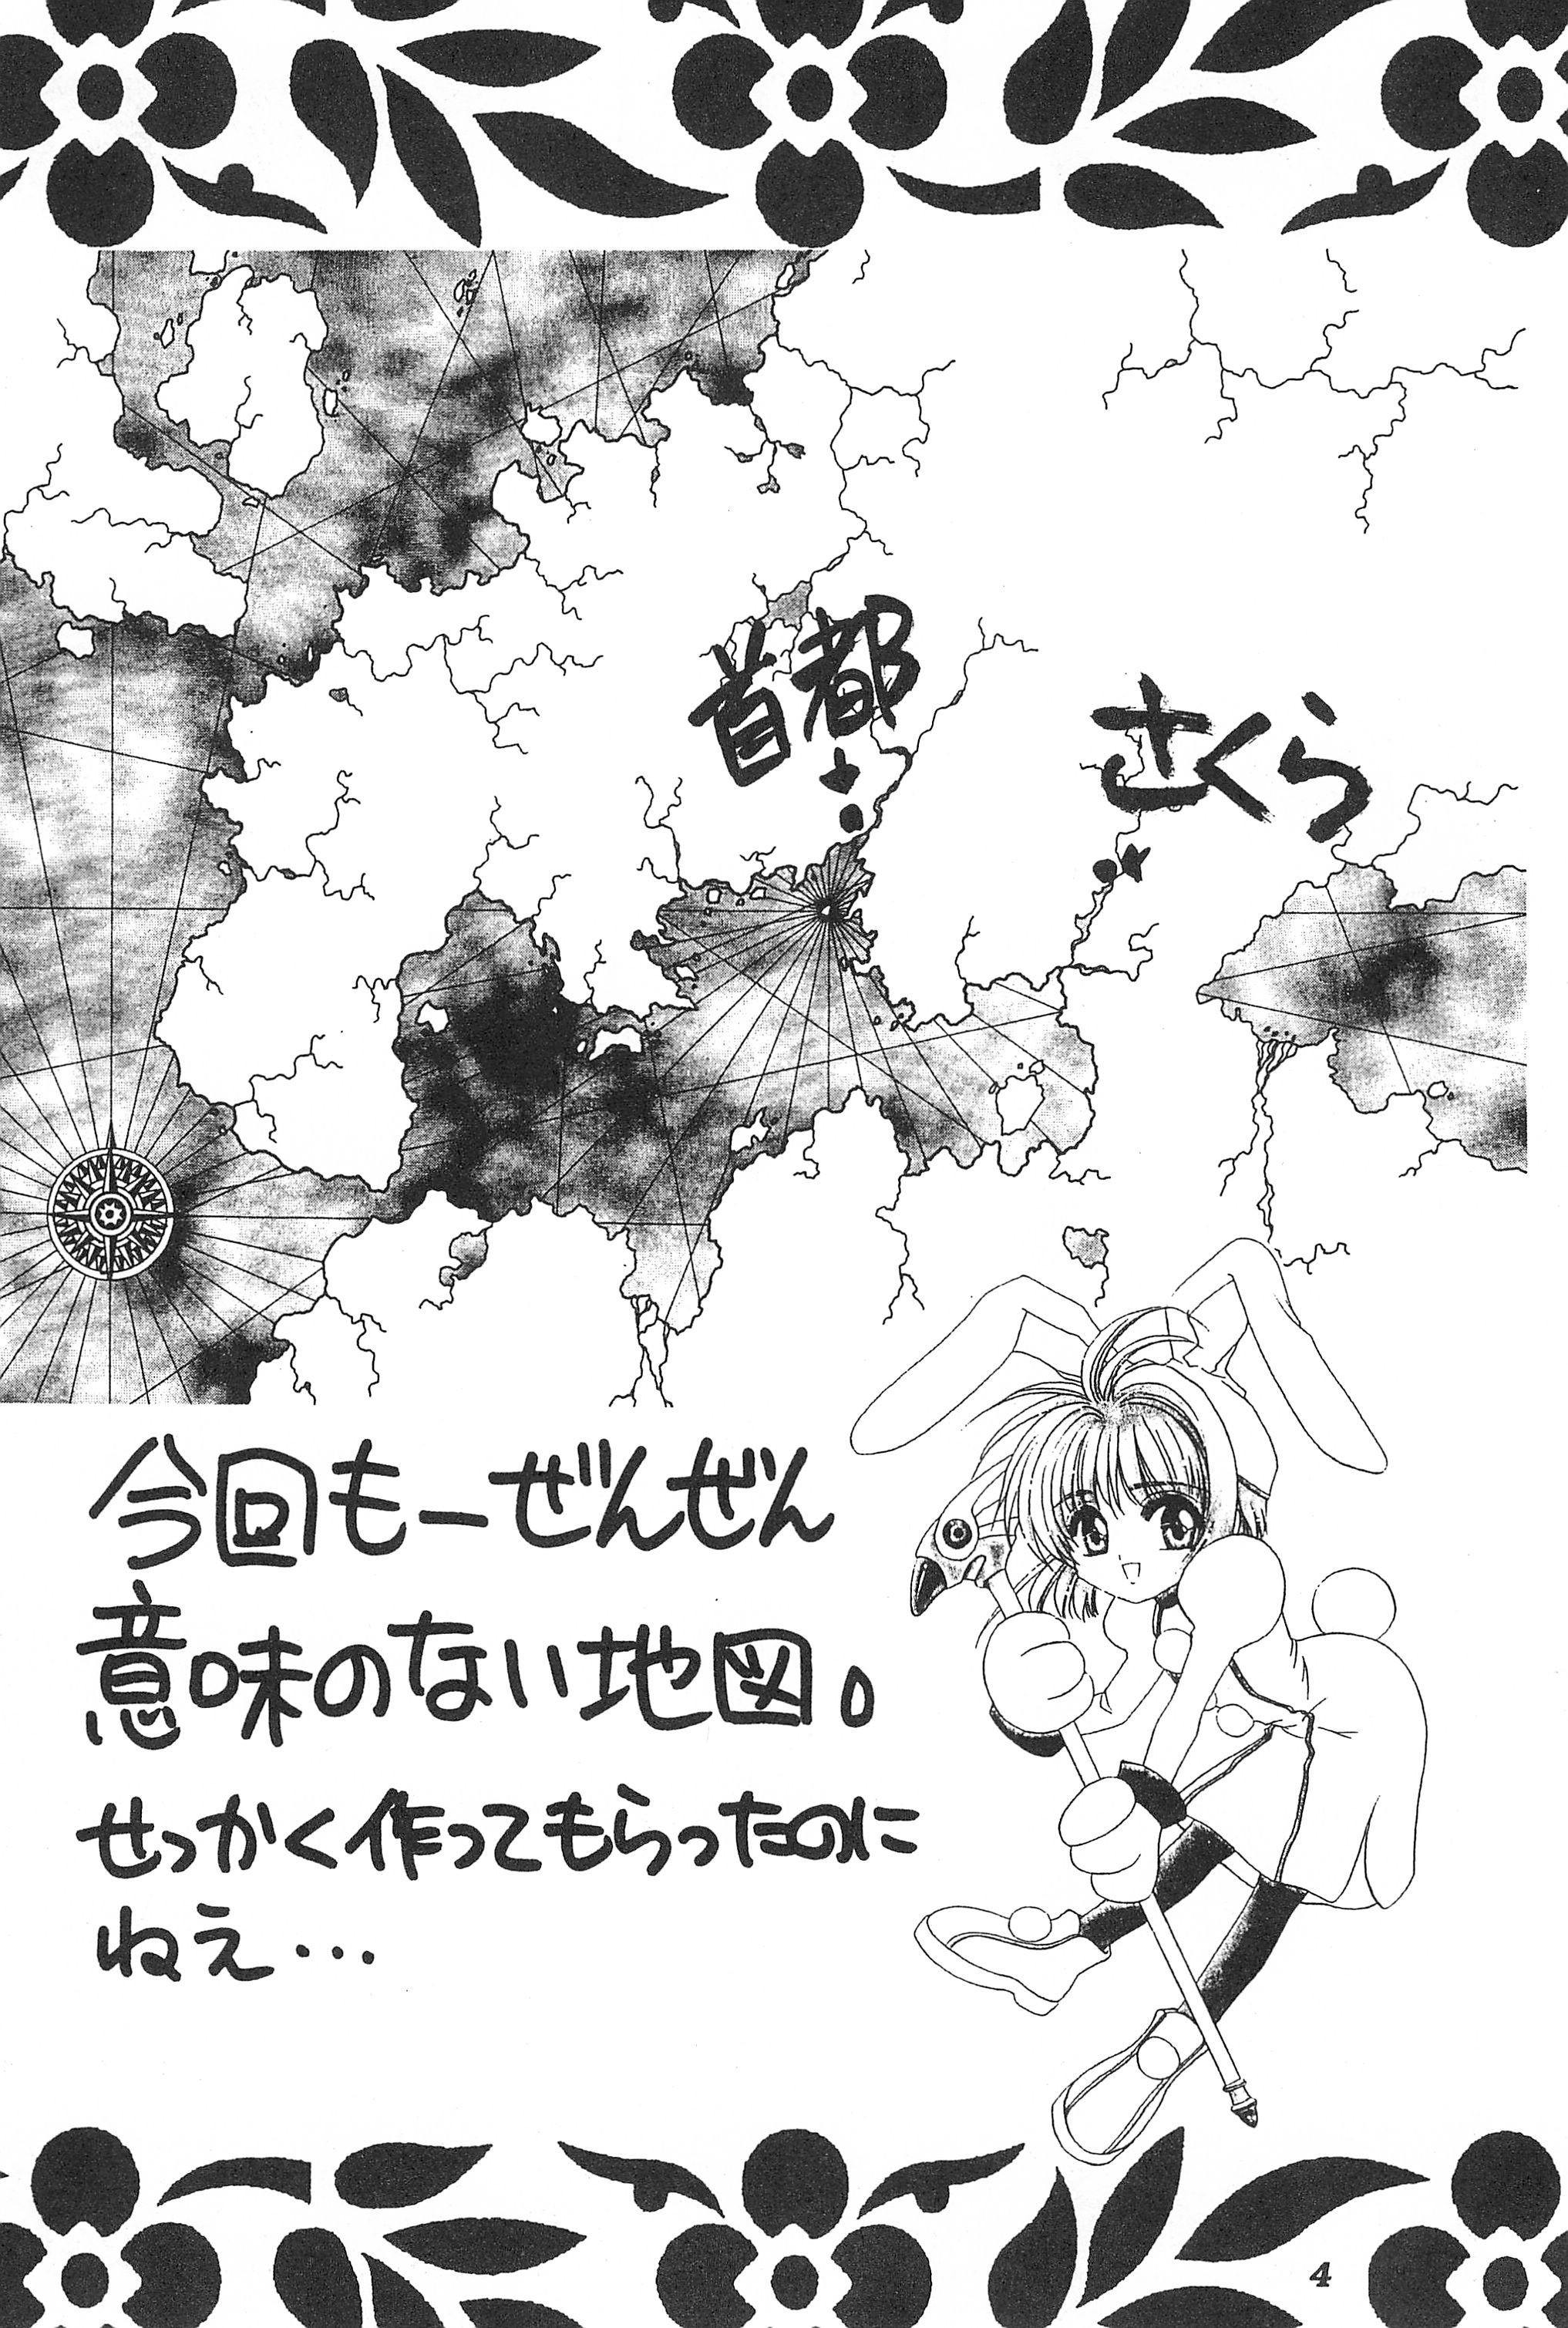 Cogida Akatsuki Teikoku 3 - Cardcaptor sakura Ninfeta - Page 6